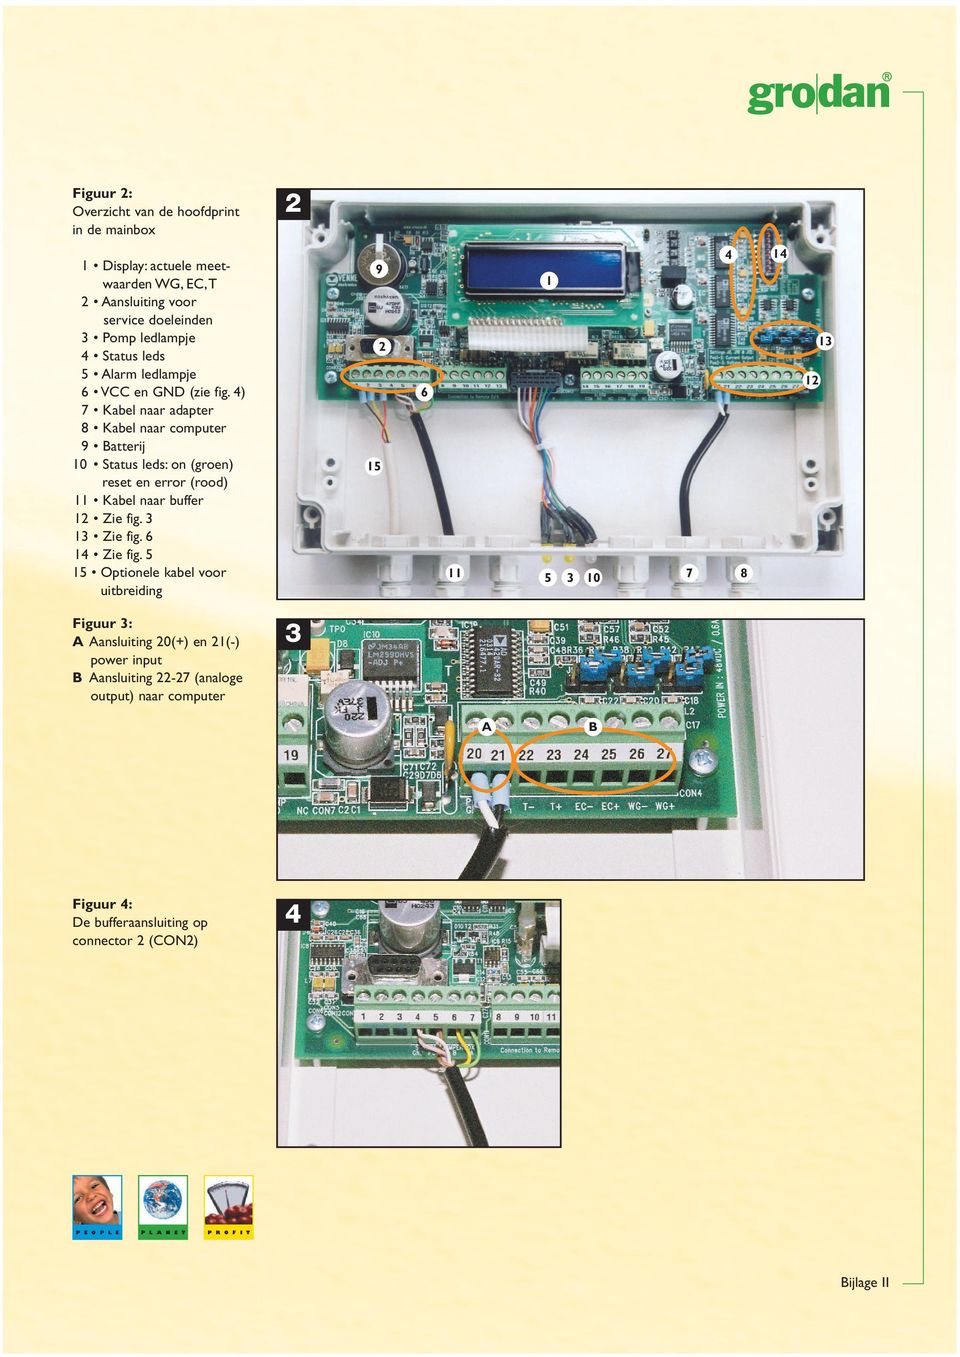 voor service doeleinden 3 Pomp ledlampje 4 Status leds 5 Alarm ledlampje 6 VCC en GND (zie fig.